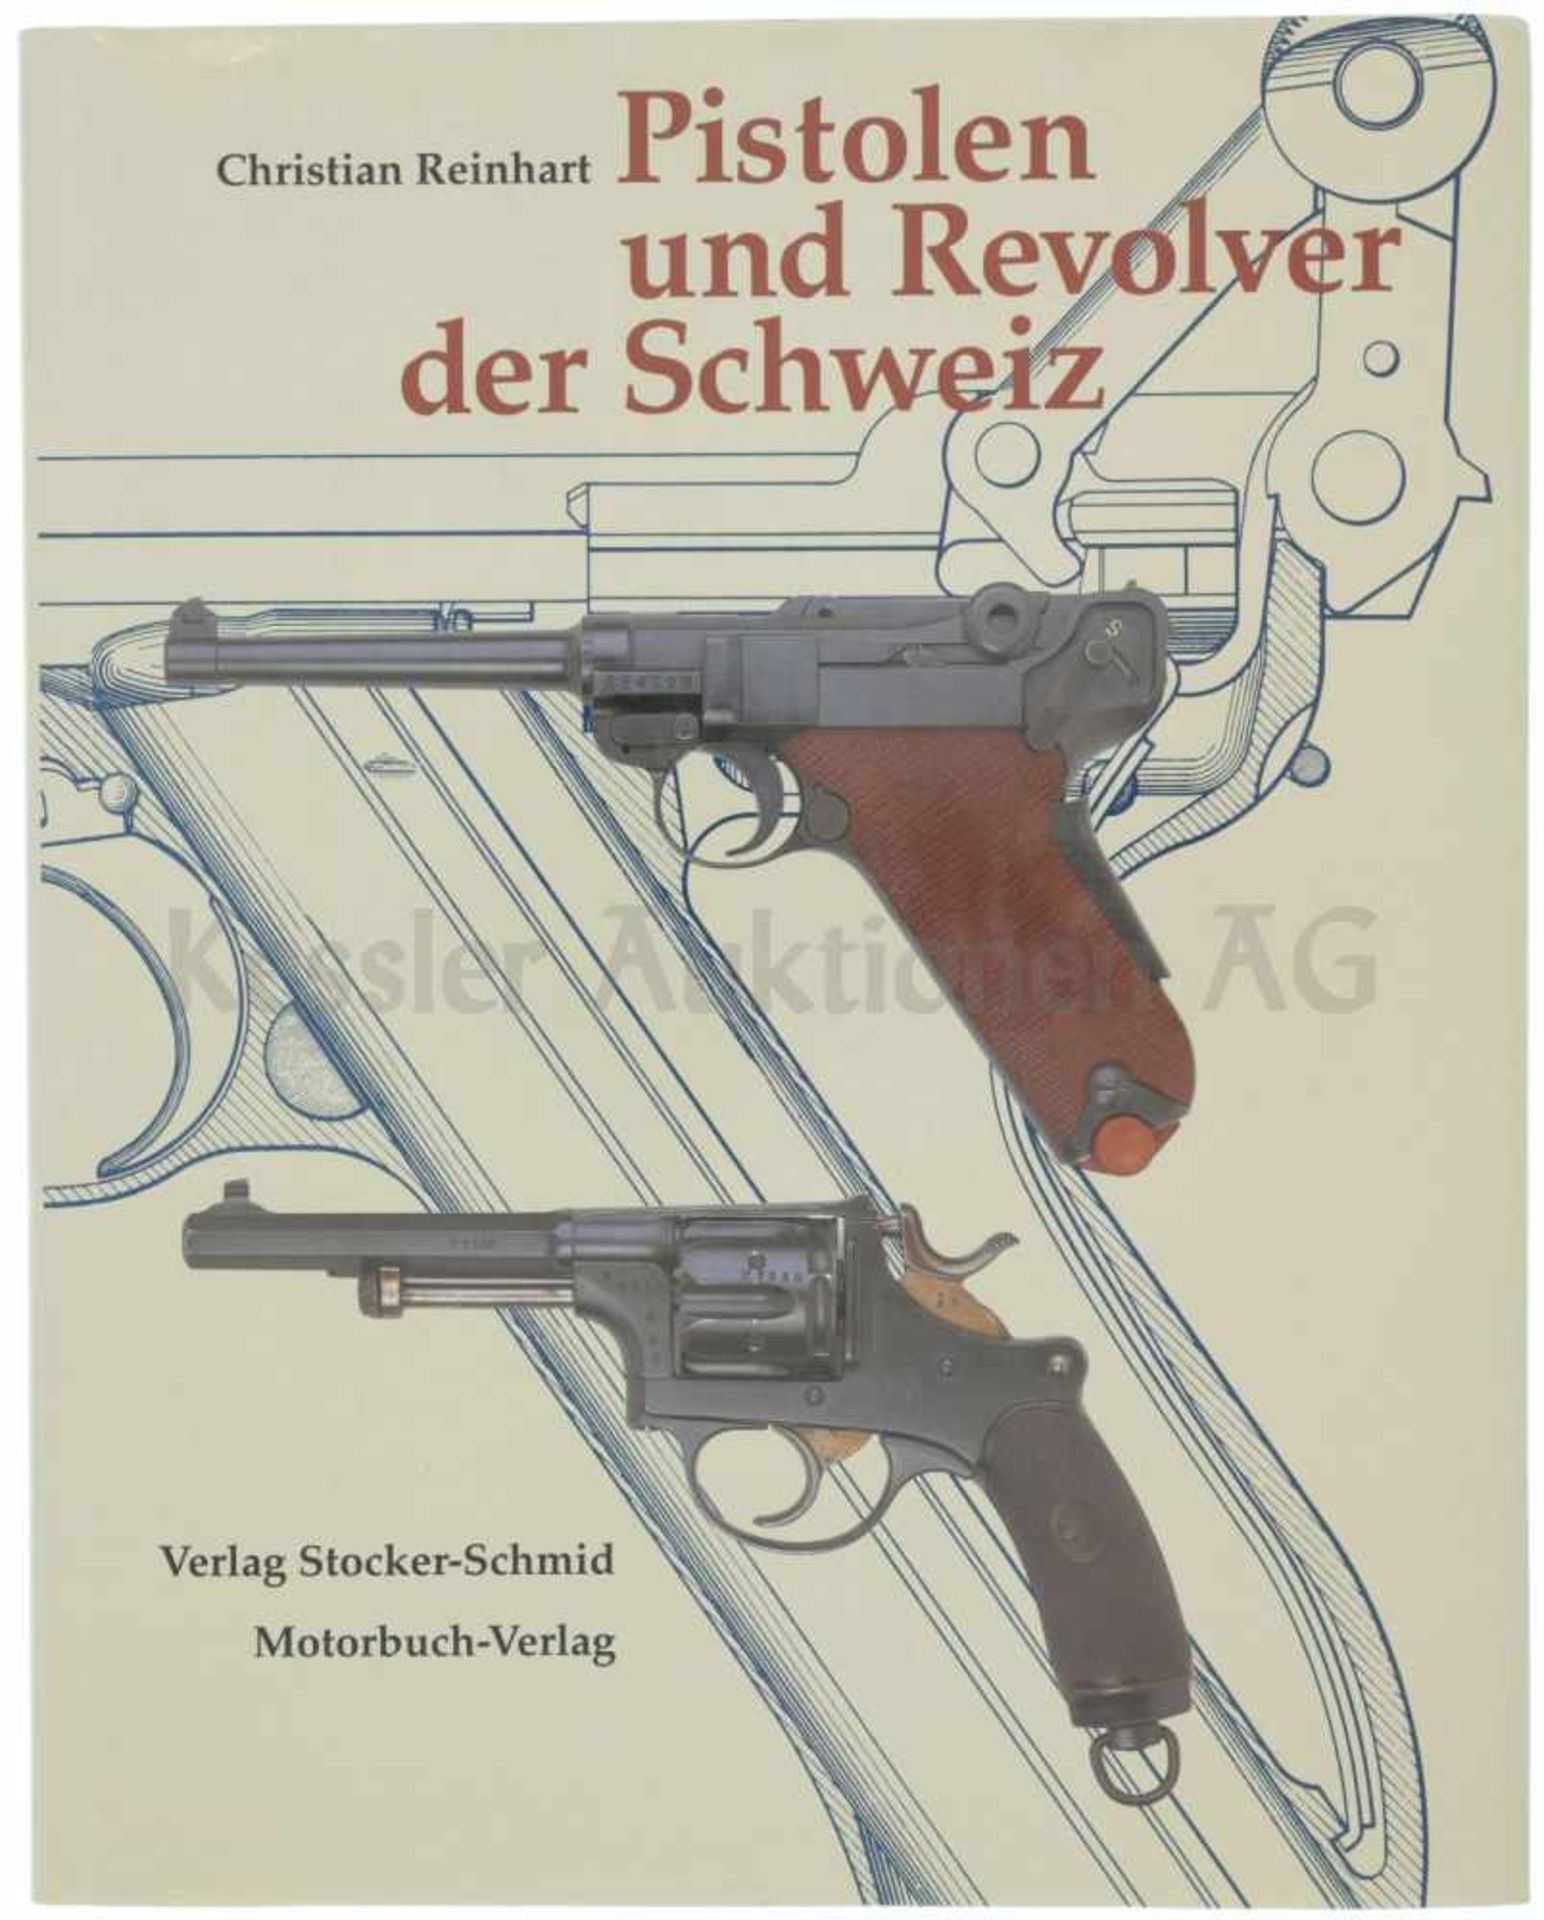 Pistolen und Revolver der Schweiz von Christian Reinhart, Michael am Rhyn und Jürg A.Meier.